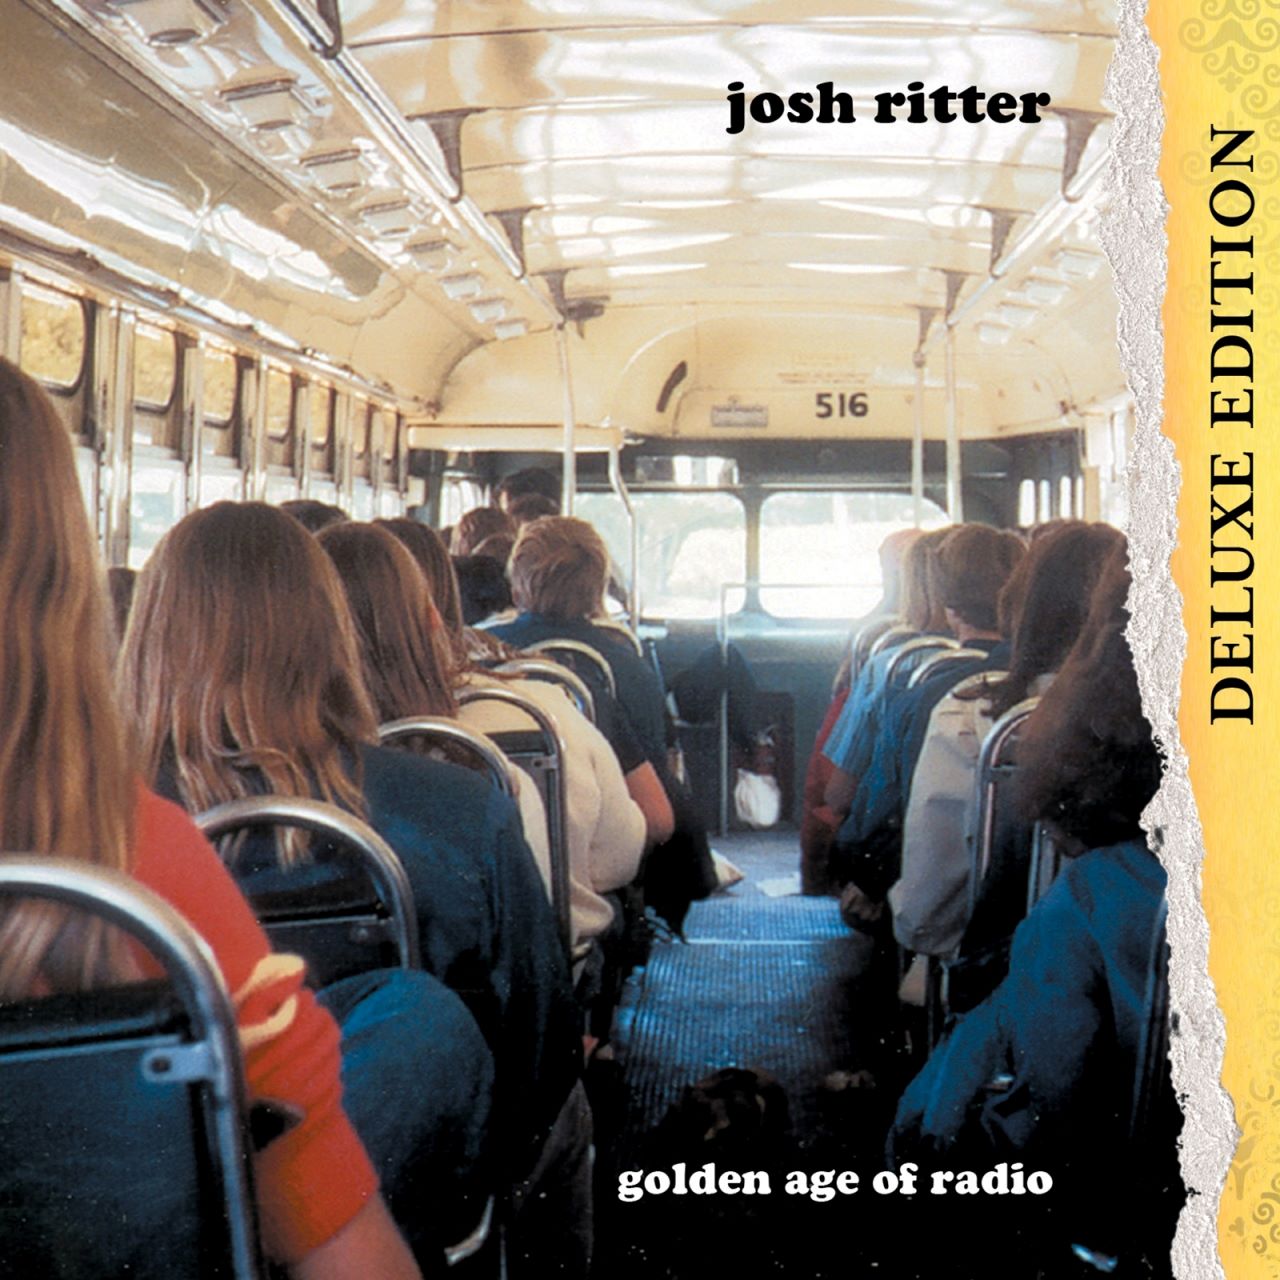 Josh Ritter - Golden Age Of Radio cover album